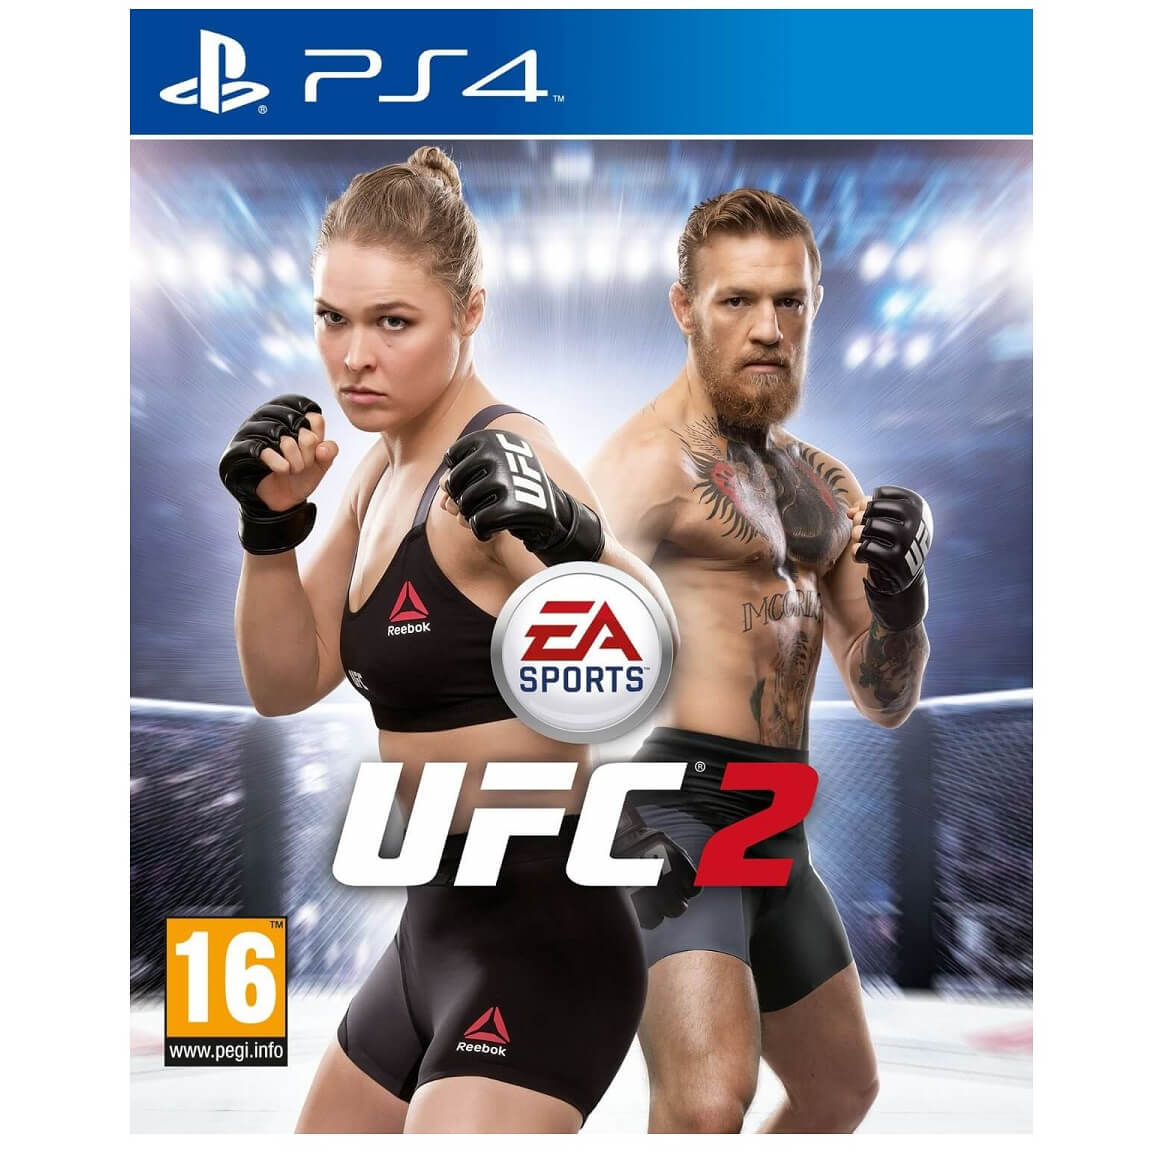 Joc PS4 EA Soprts UFC 2